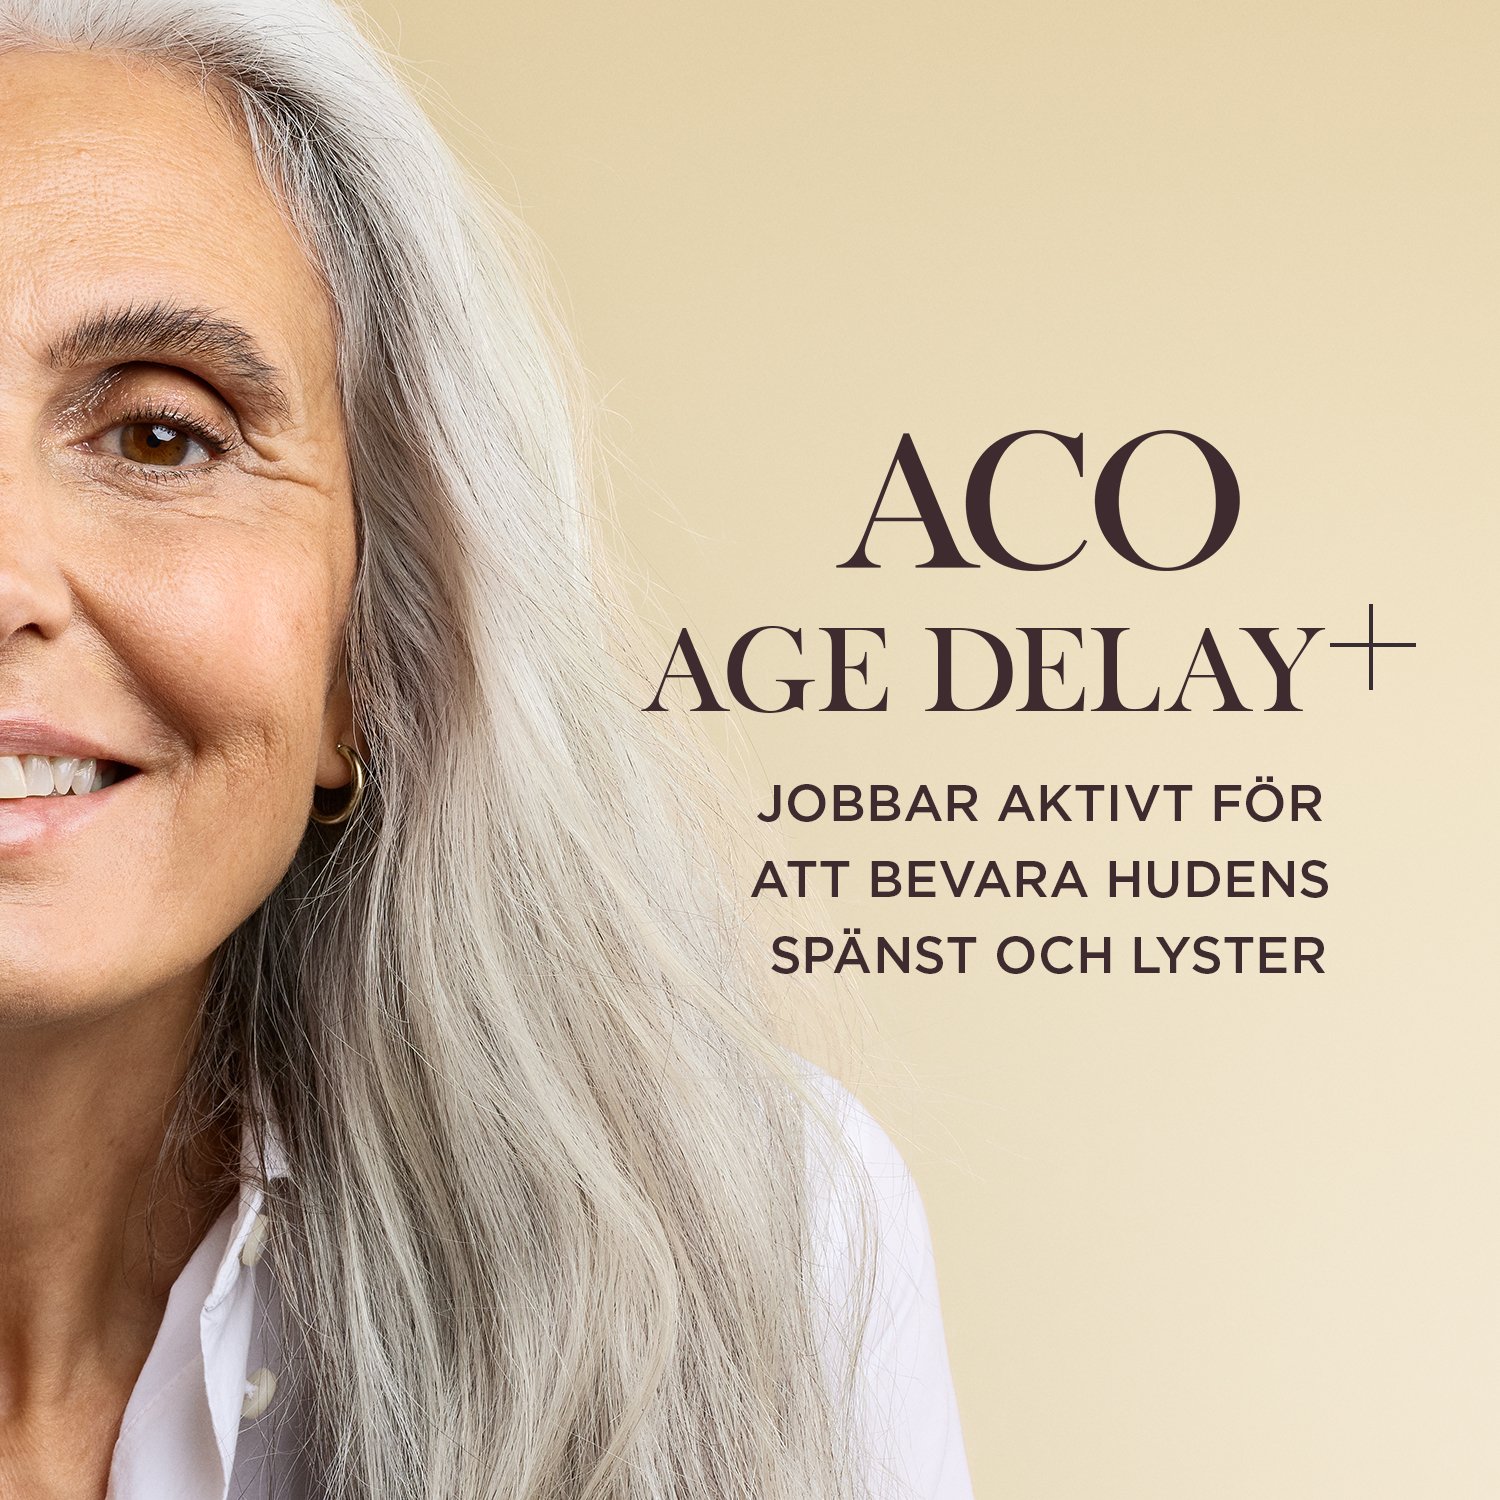 ACO Age Delay+ Day Cream SPF15 Anti Age Dagkräm 50 ml